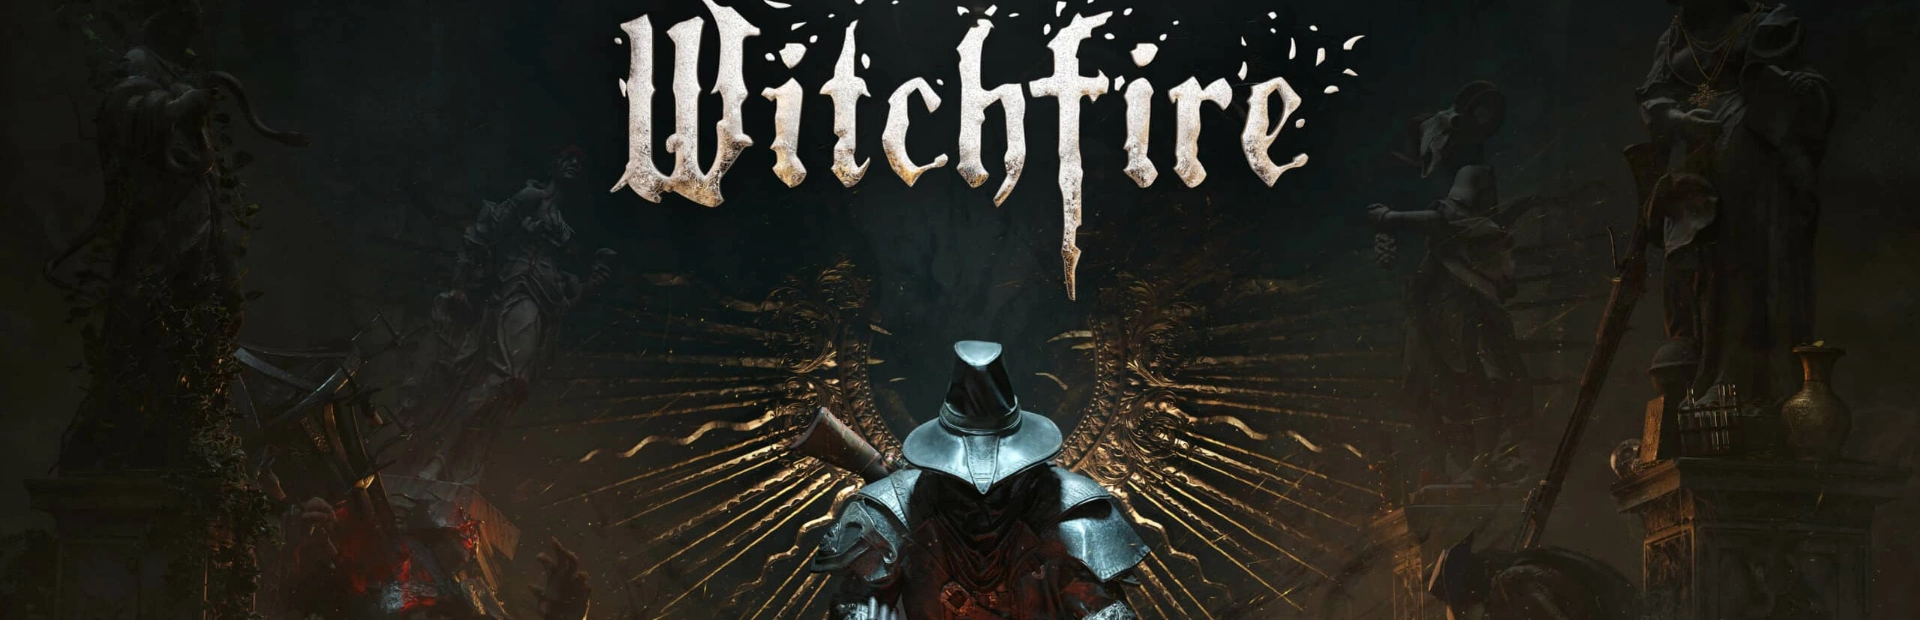 دانلود بازی Witchfire برای کامپیوتر | گیمباتو